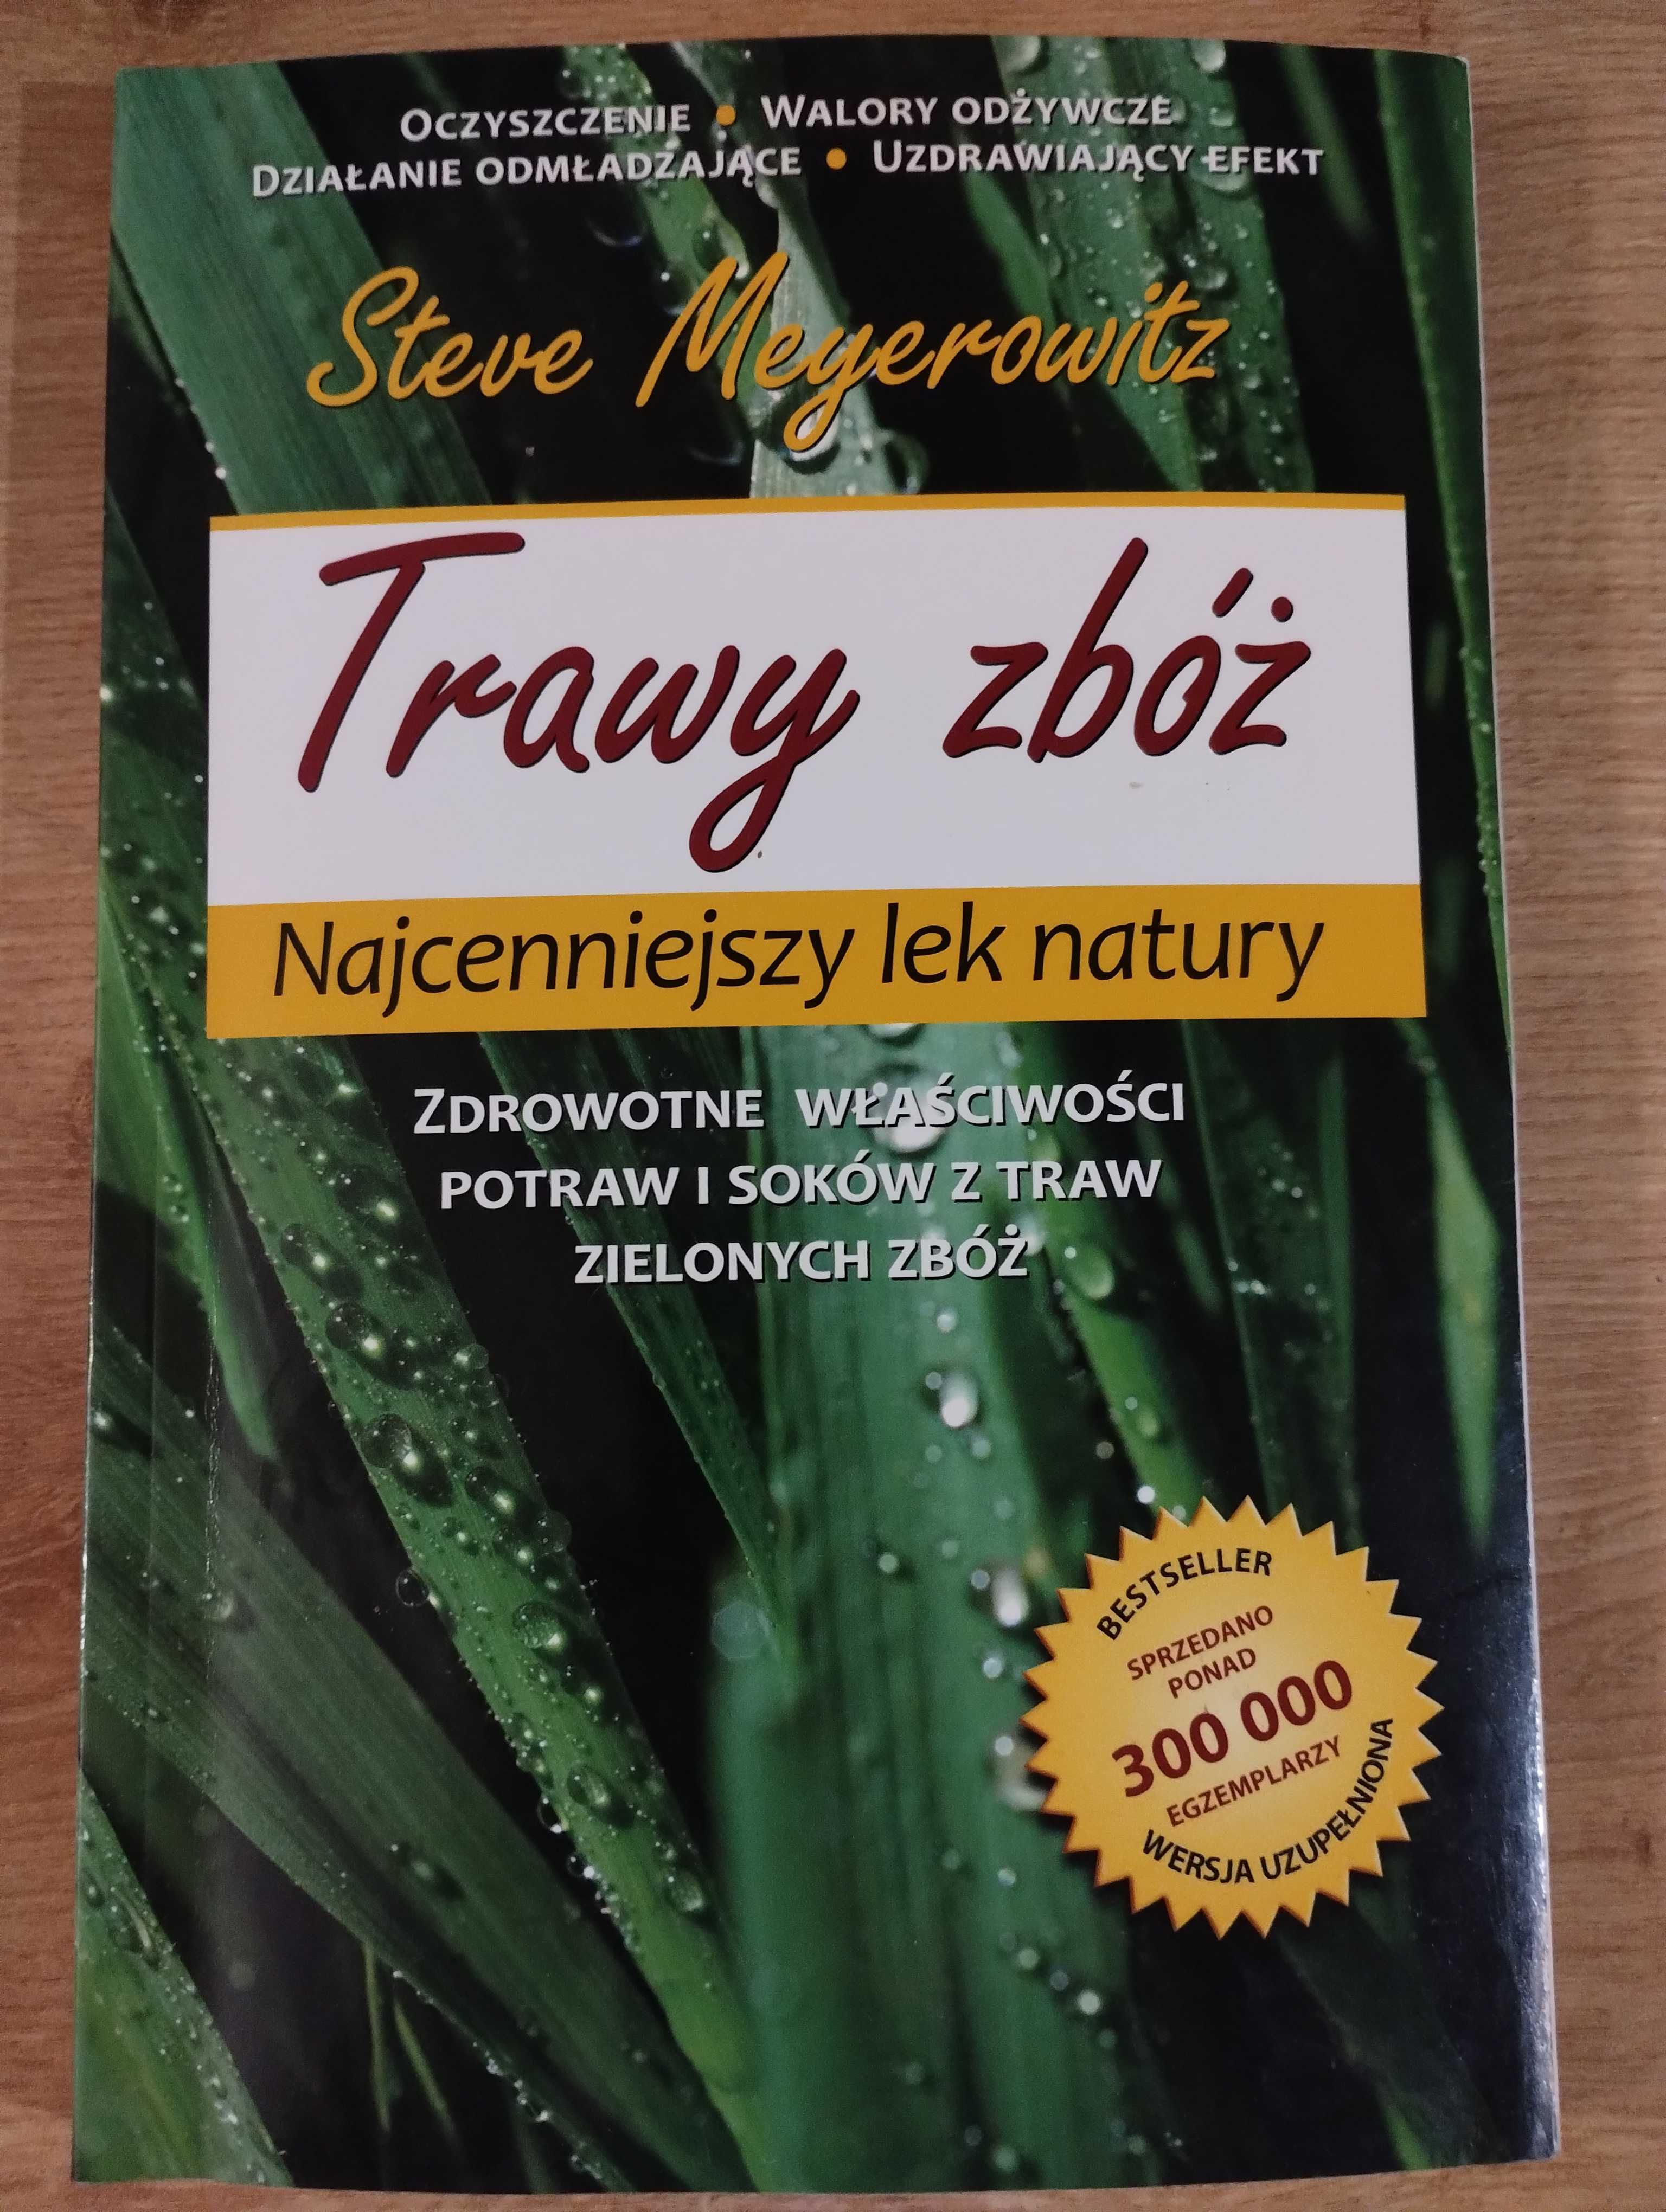 Meyerowitz Trawy zbóż najcenniejszy lek natury zdrowotne właściwości